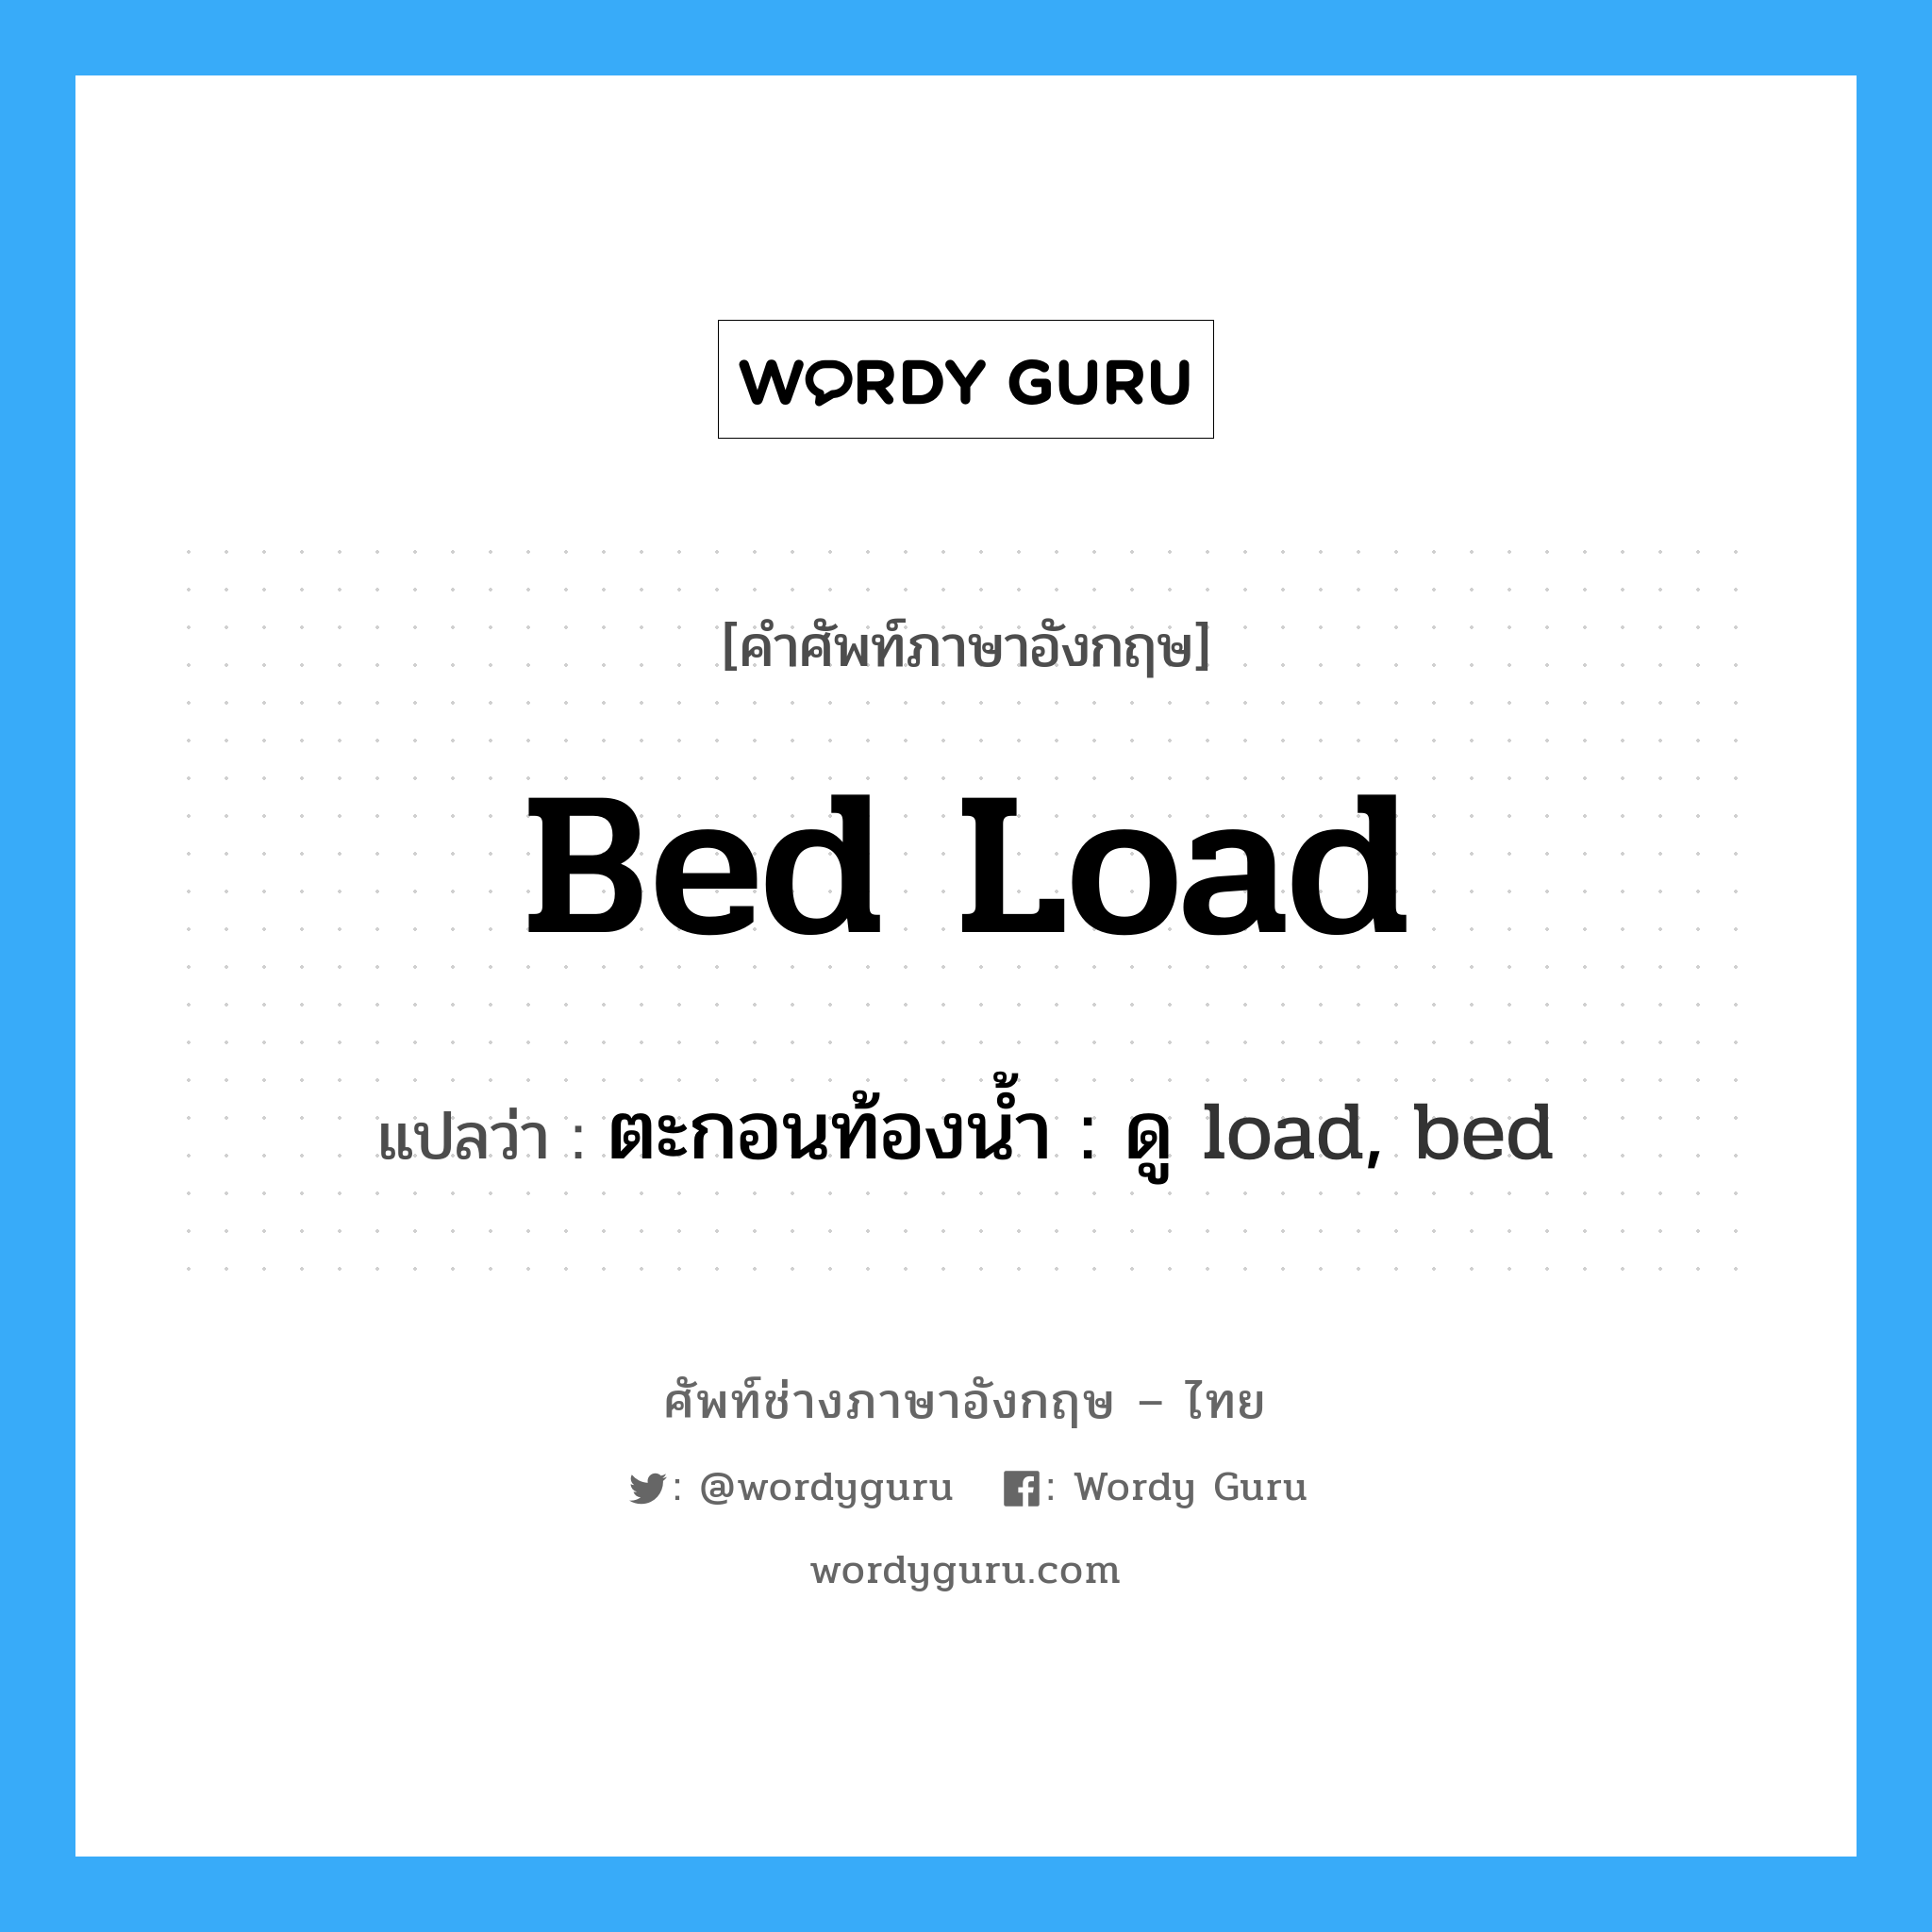 ตะกอนท้องน้ำ : ดู load, bed ภาษาอังกฤษ?, คำศัพท์ช่างภาษาอังกฤษ - ไทย ตะกอนท้องน้ำ : ดู load, bed คำศัพท์ภาษาอังกฤษ ตะกอนท้องน้ำ : ดู load, bed แปลว่า bed load